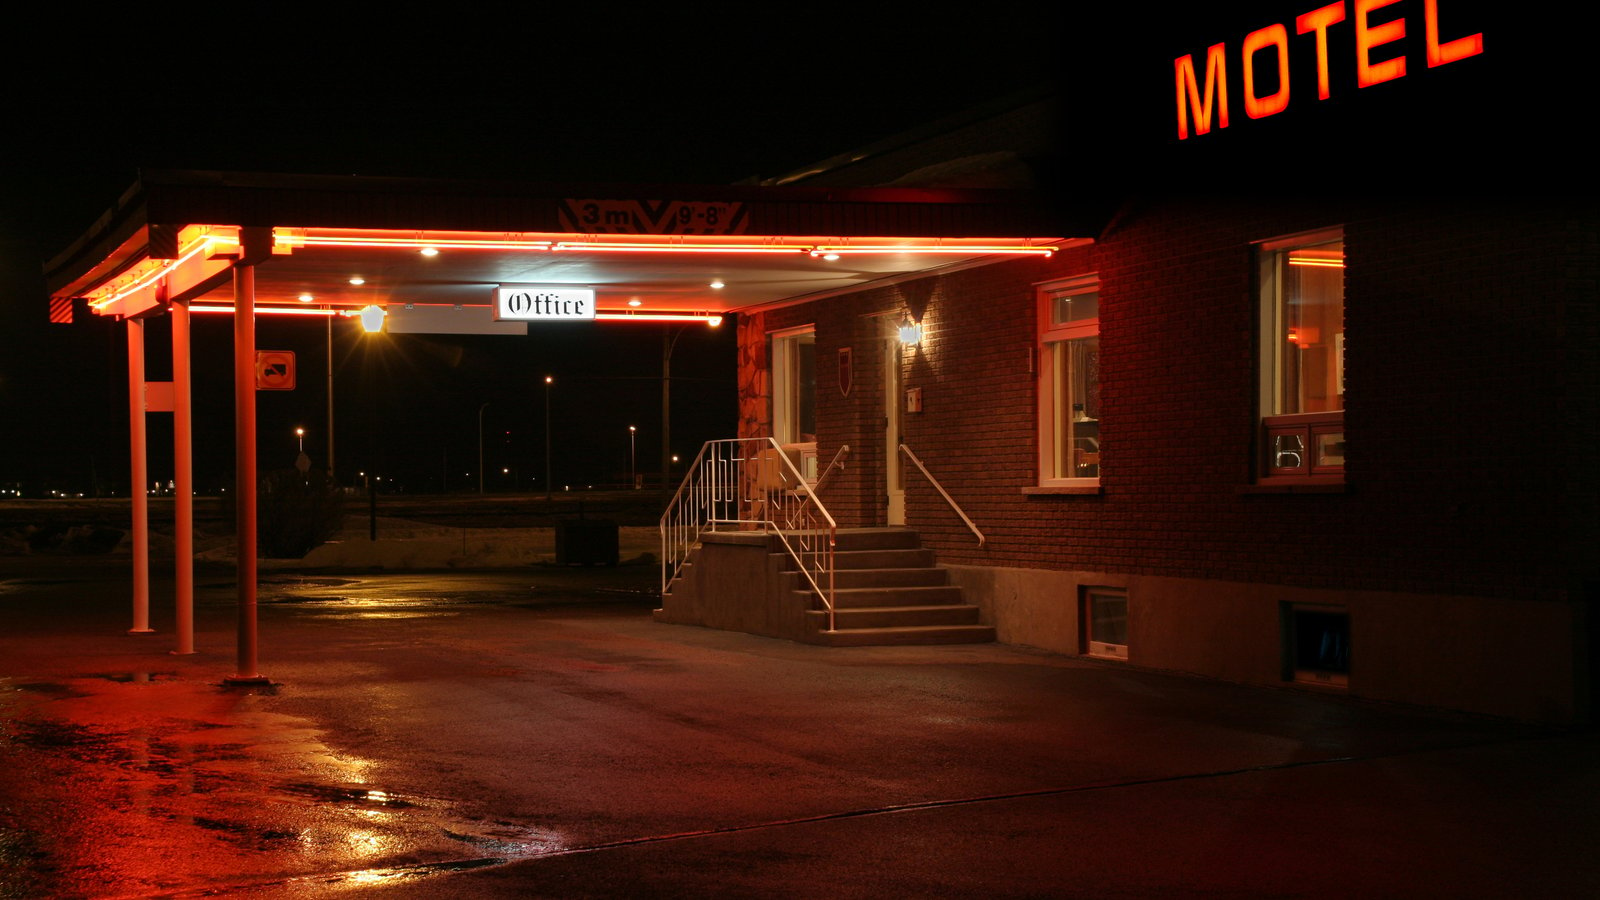 Une Québécoise dort dans un motel depuis plus d'un an sans avoir trouvé de logement